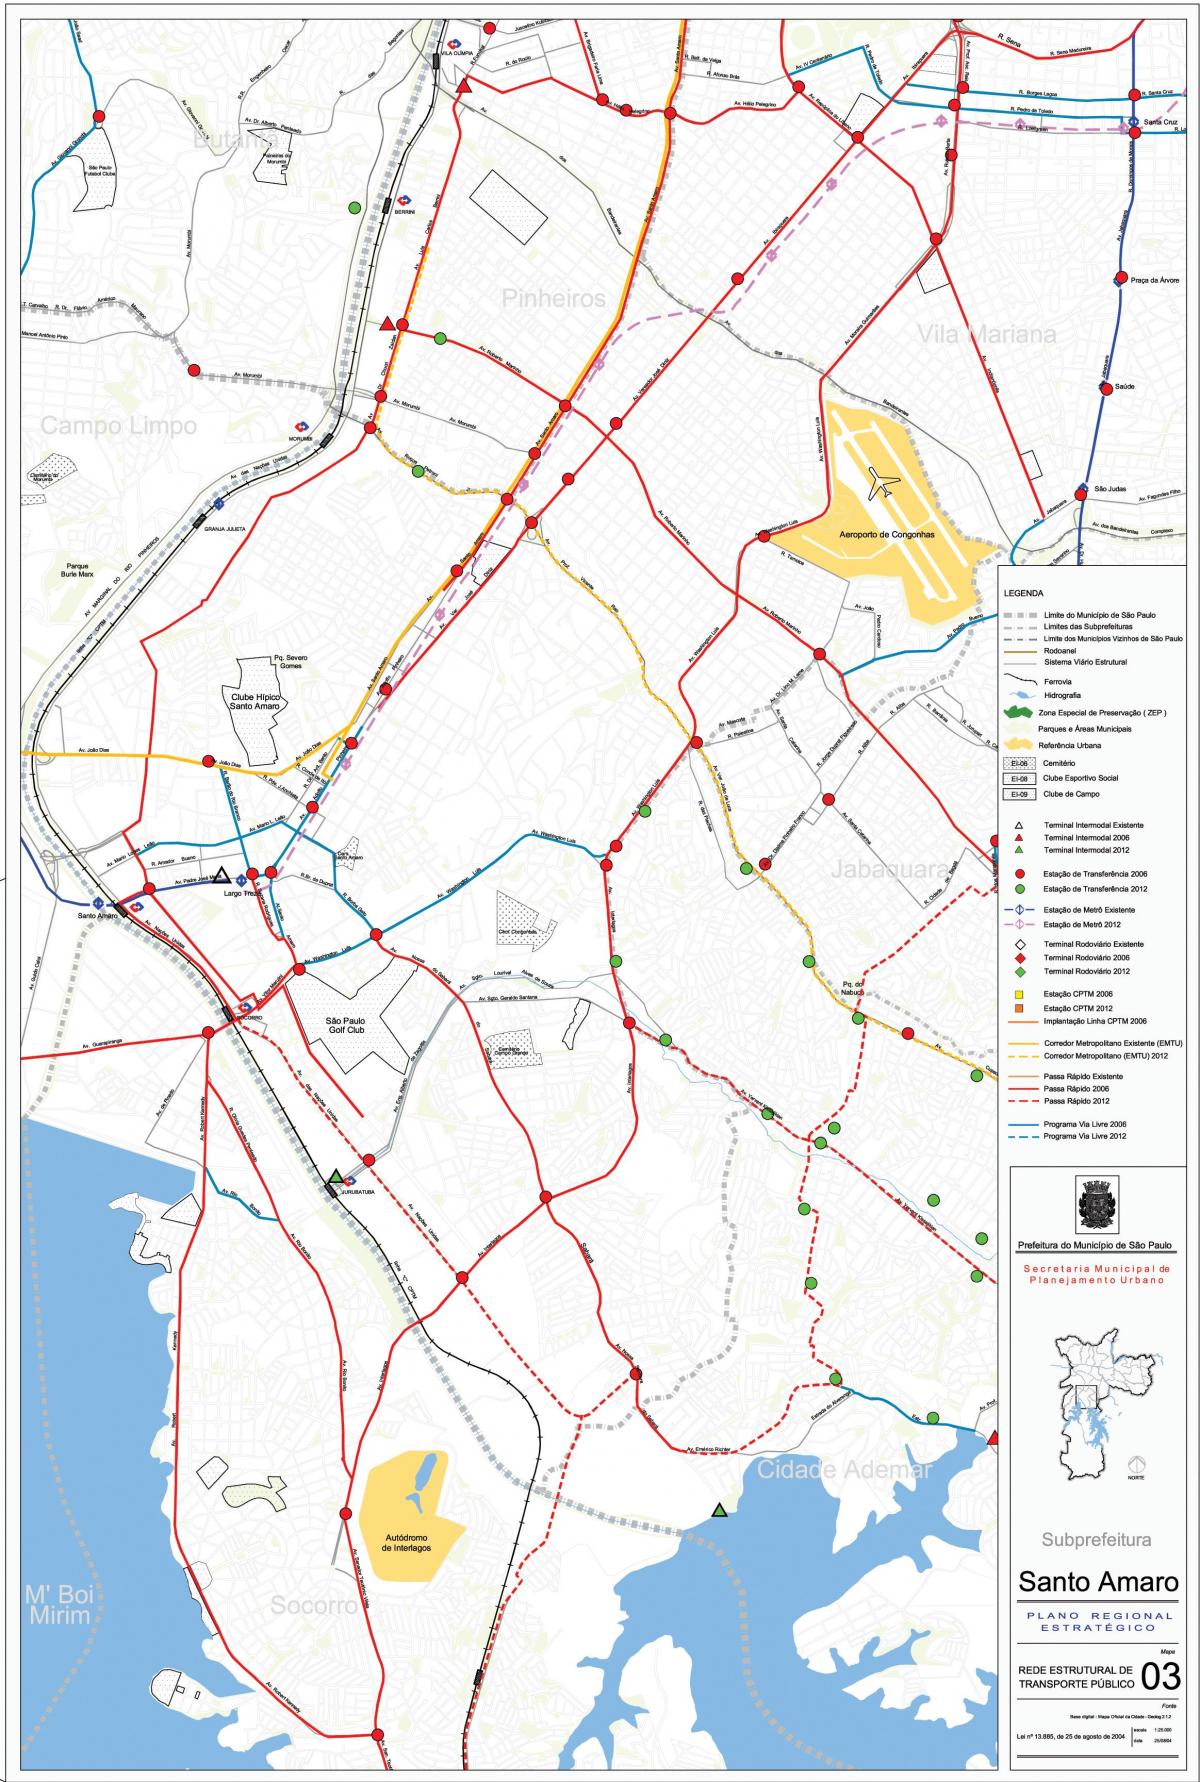 Zemljevid Santo Amaro Sao Paulo - Javni prevozi